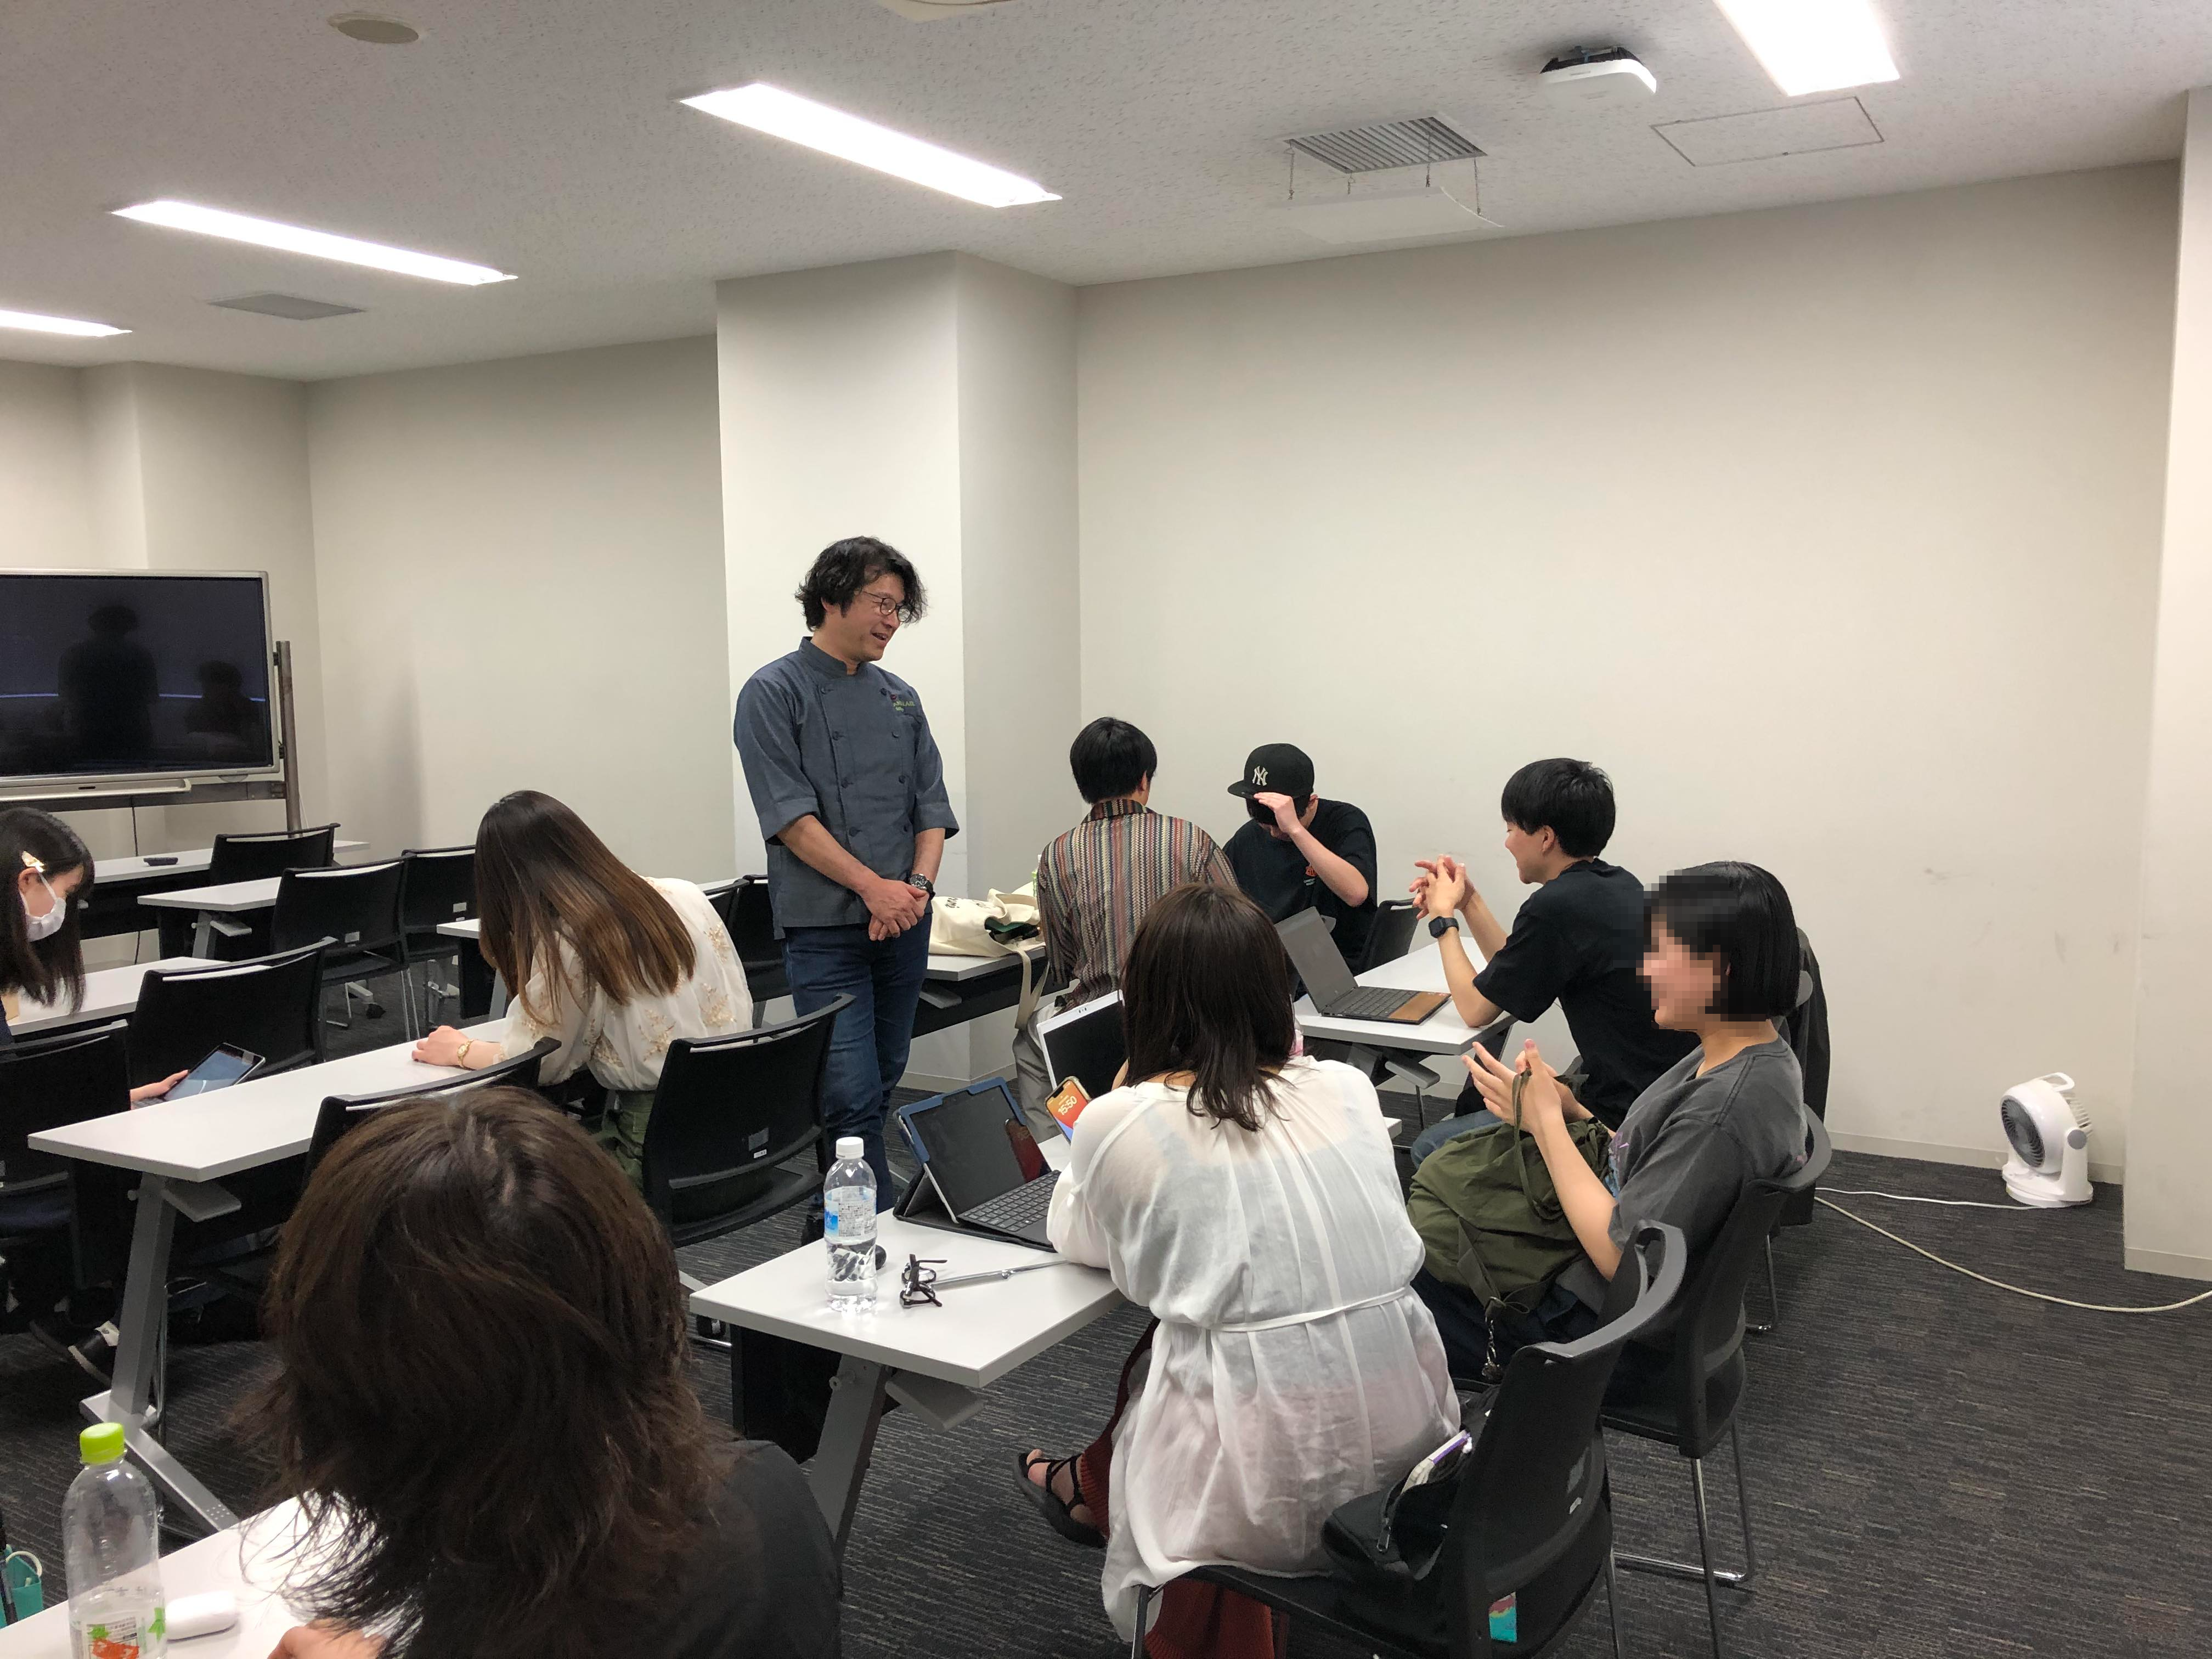 スポンジのぼうし主催の小田原益広が中京大学でマーケティングを学ぶ学生に講義をしています。